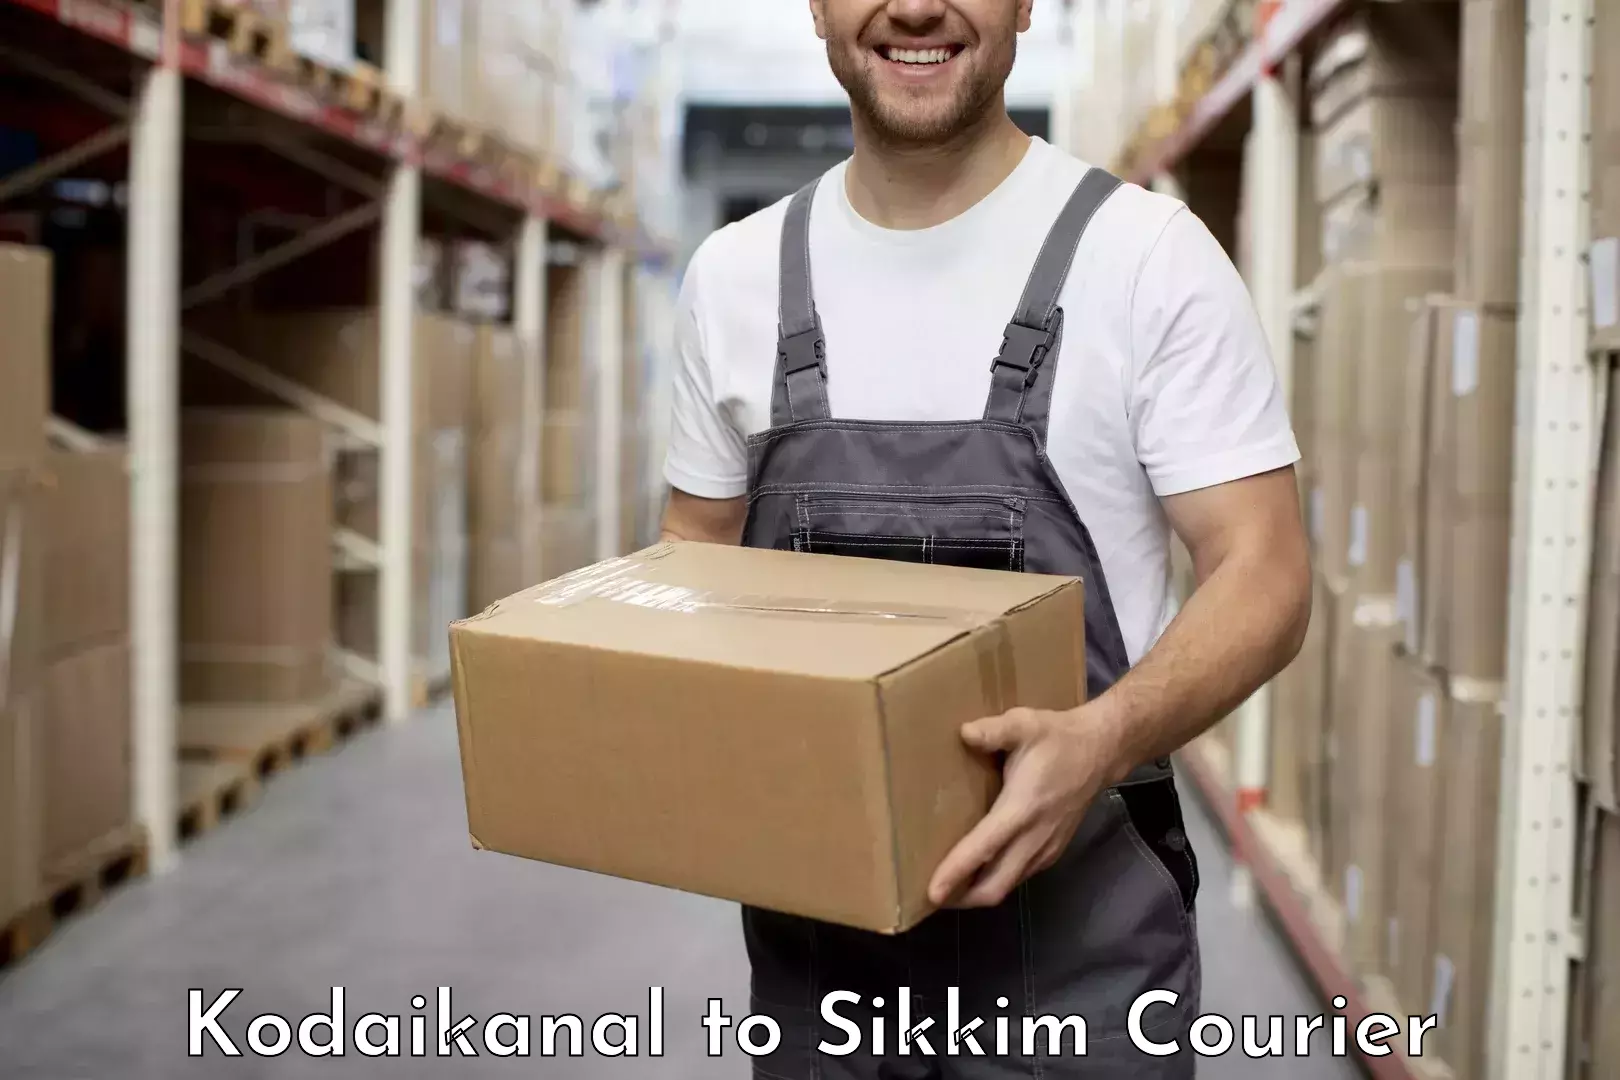 Premium courier services Kodaikanal to Sikkim